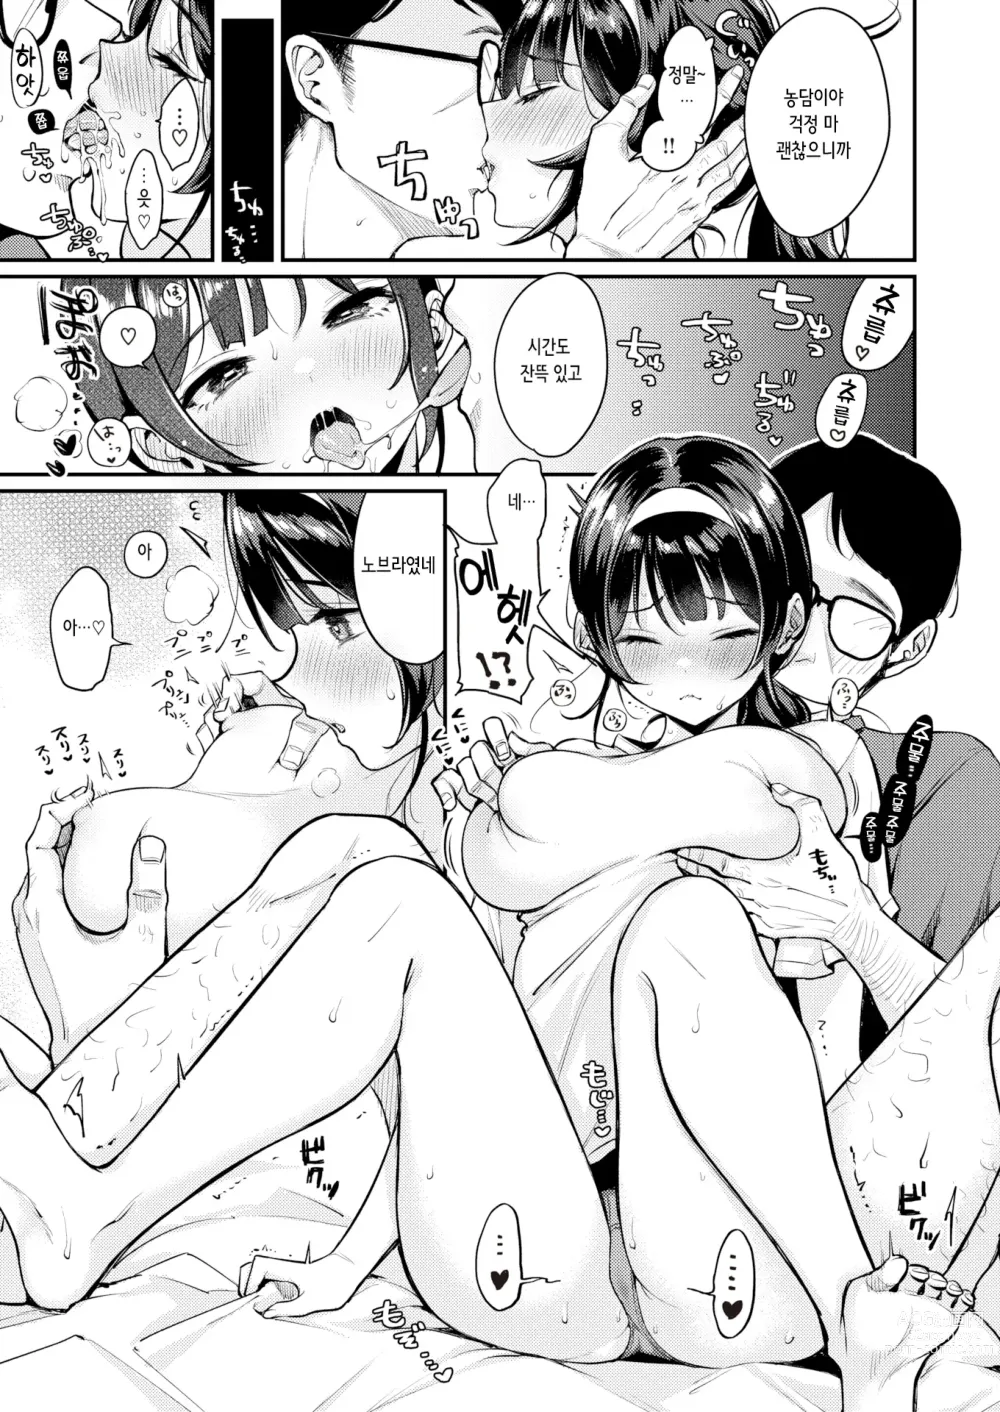 Page 7 of manga 오리히메 쨩과 히코보시 씨